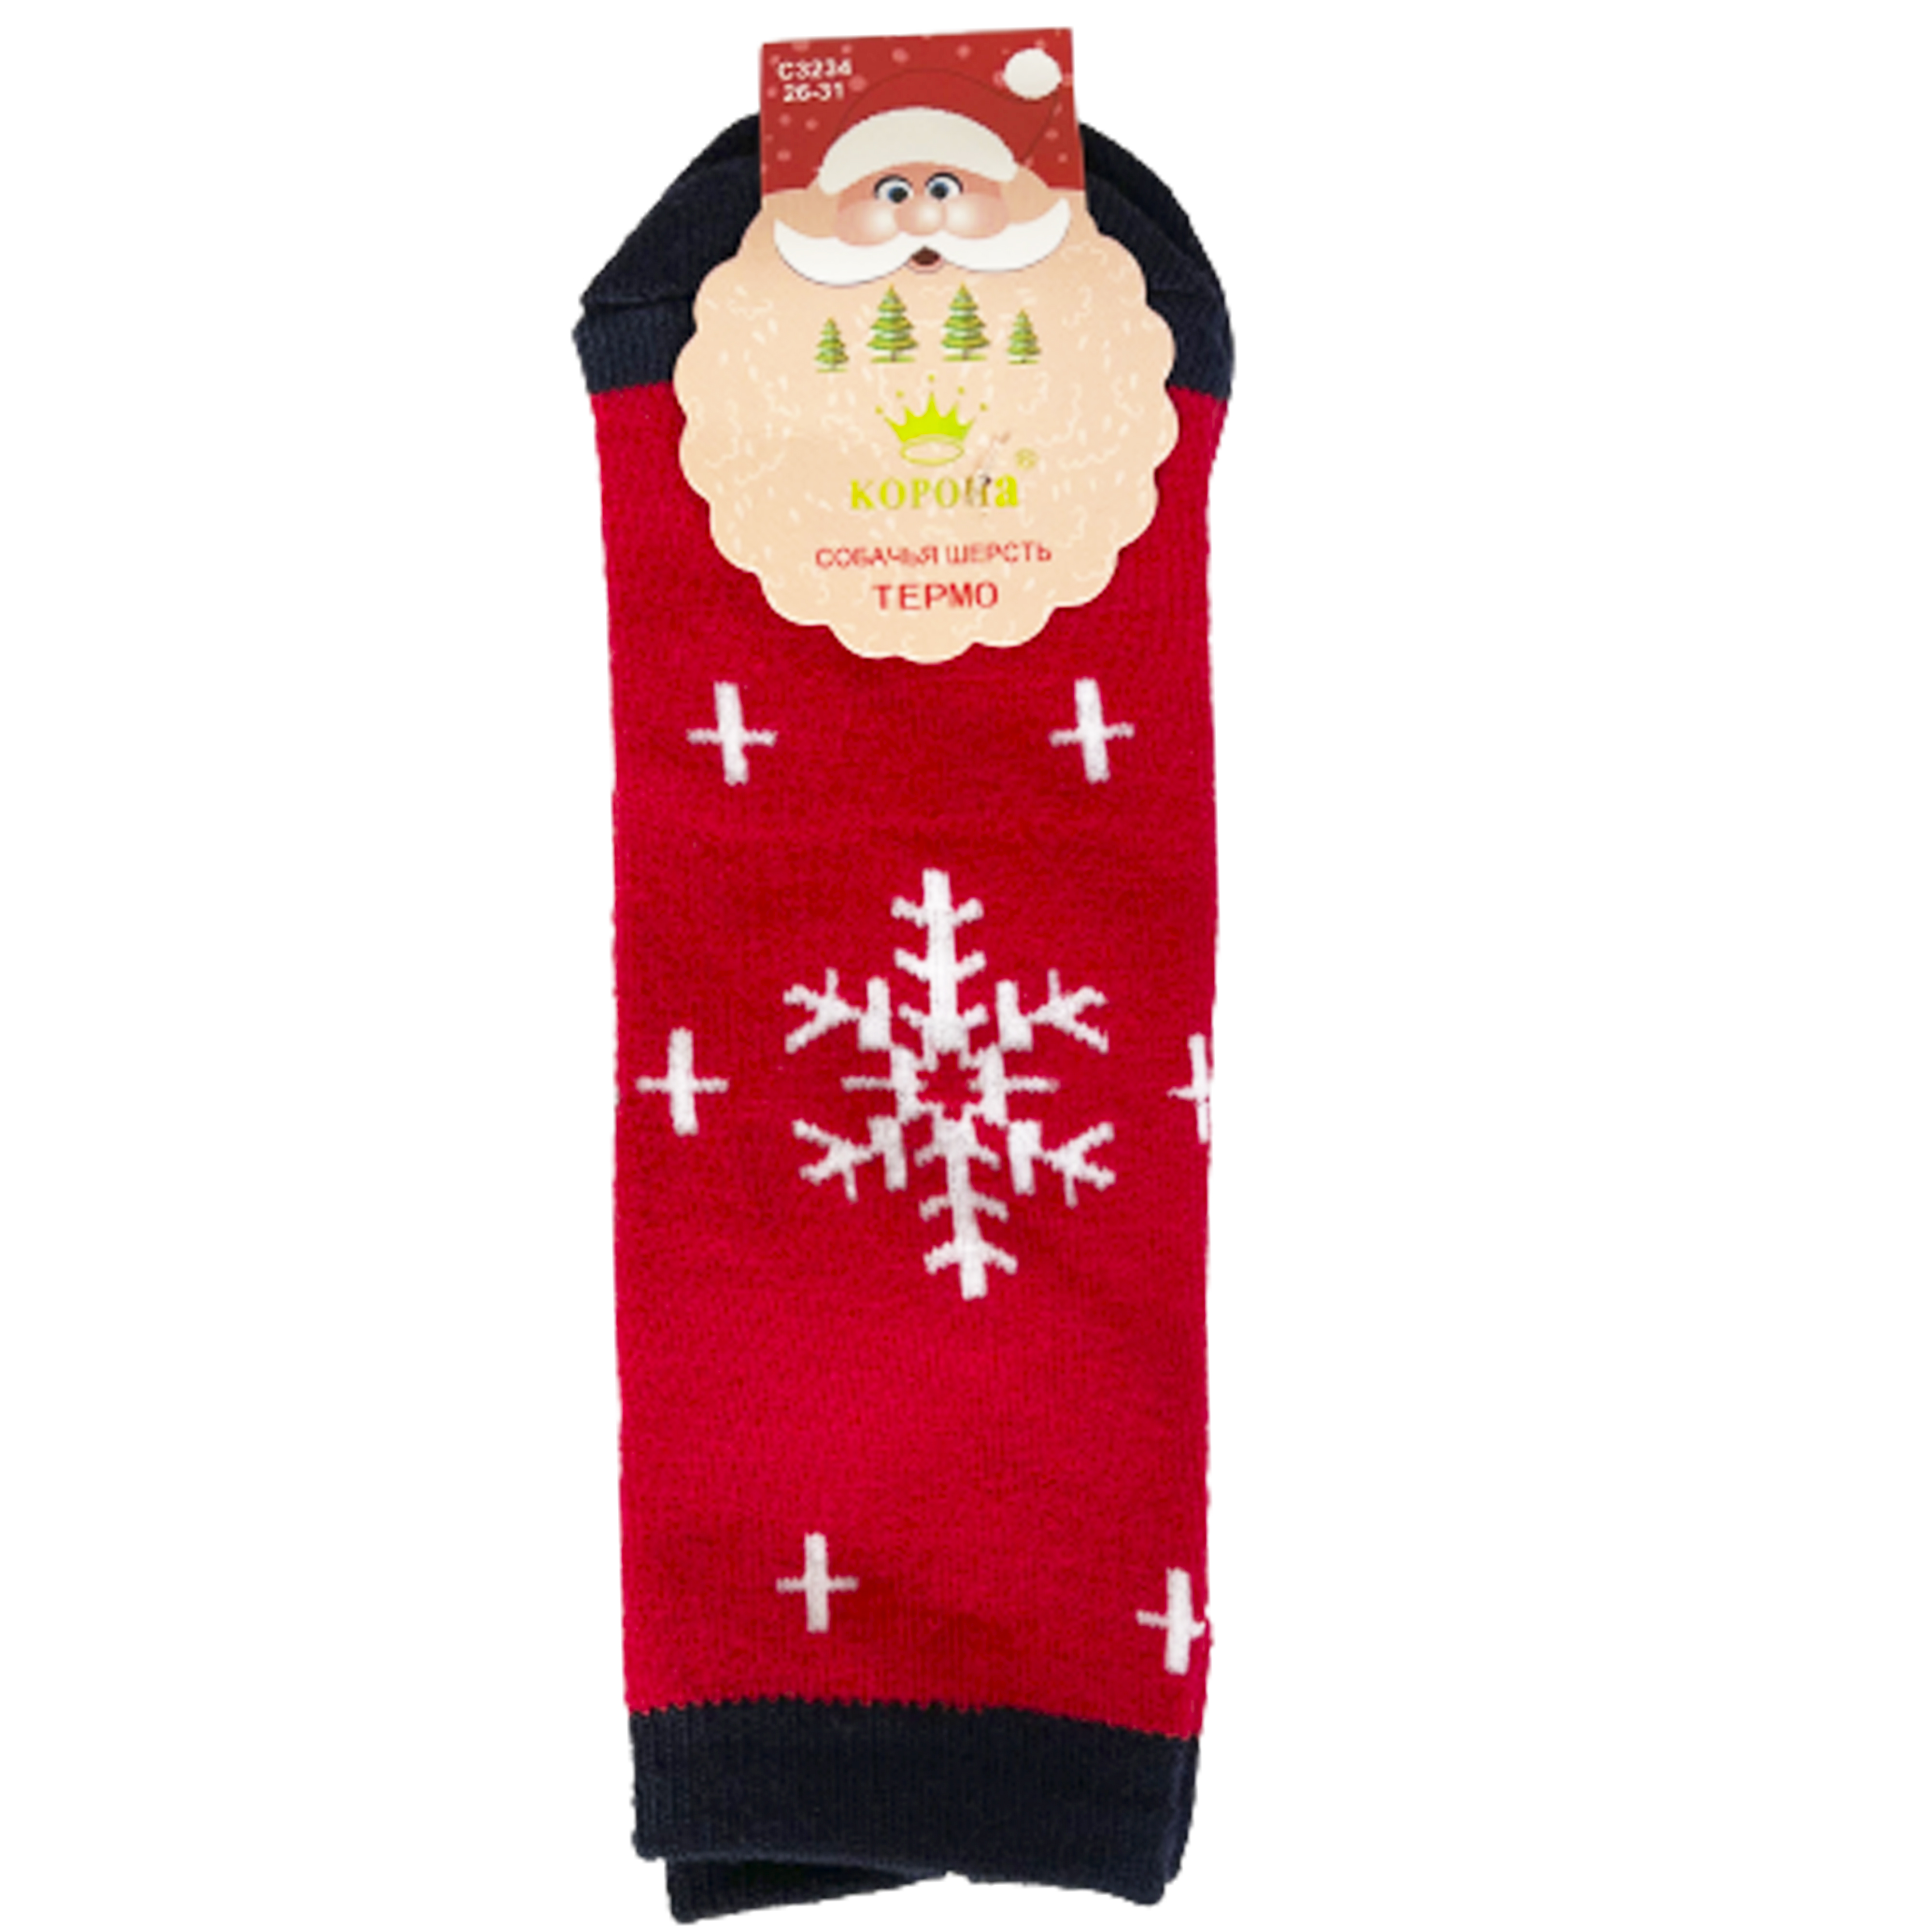 Шкарпетки TM Корона C3234 махрові, сніжинка, червоні, р. 21-26  large popup